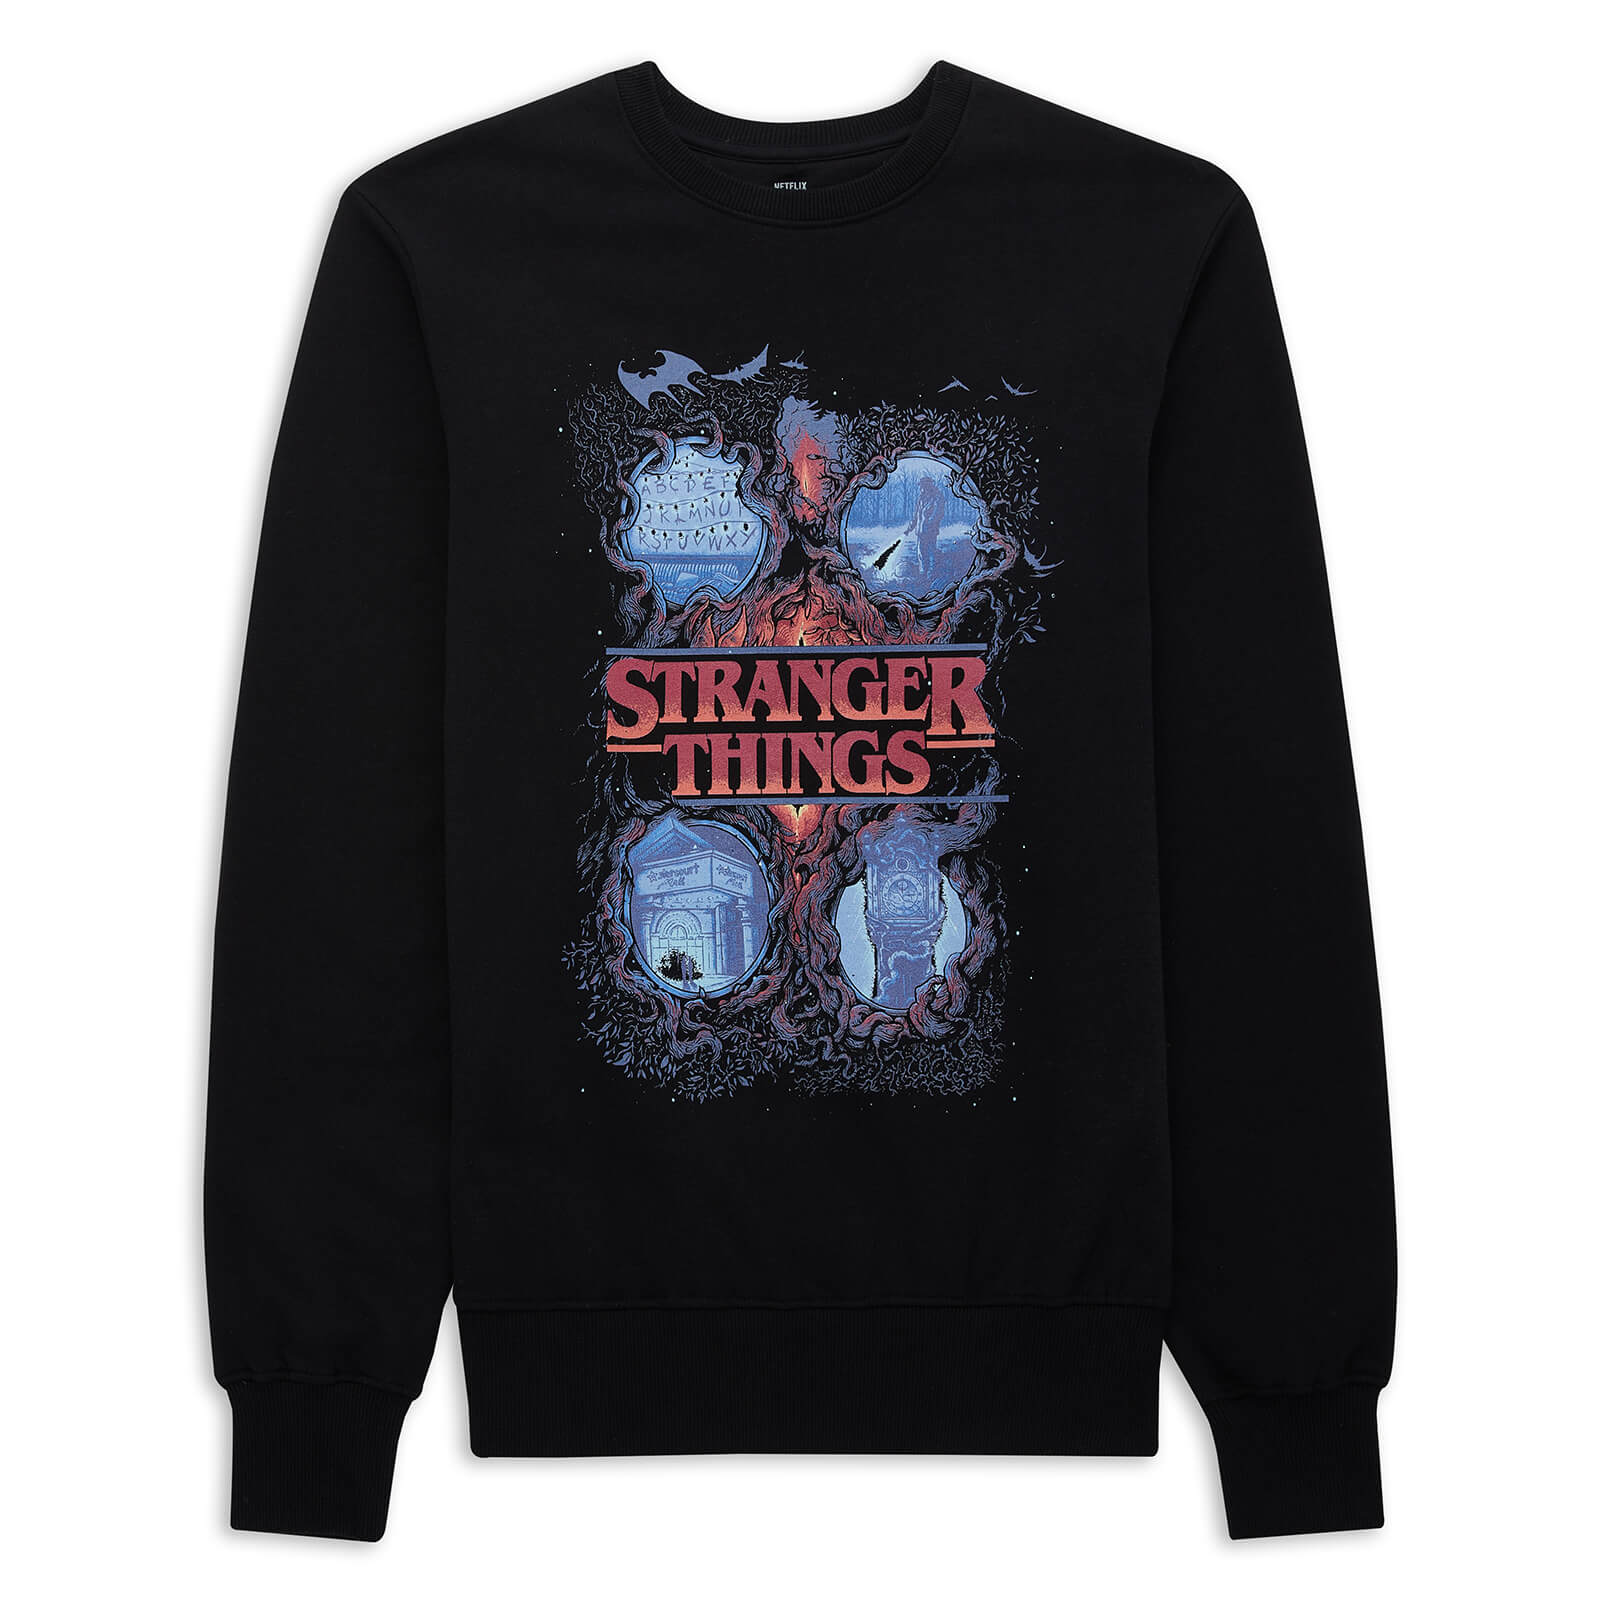 Stranger Things x Alex Hovey Four Seasons Sweatshirt - Black - M - Black